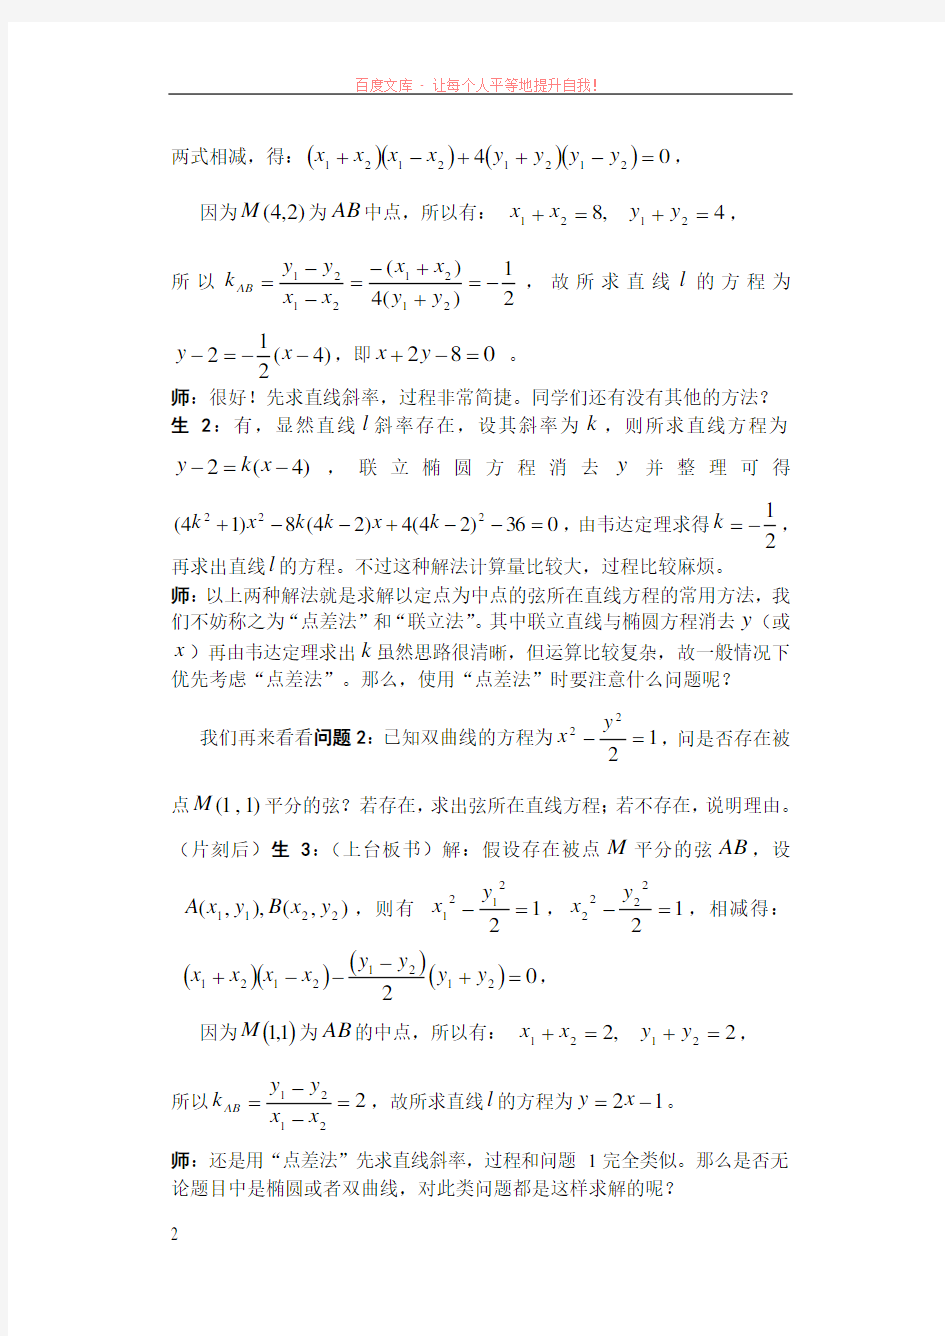 关于利用“点差法”求解中点弦所在直线斜率问题的教学案例(曹文红) (1)